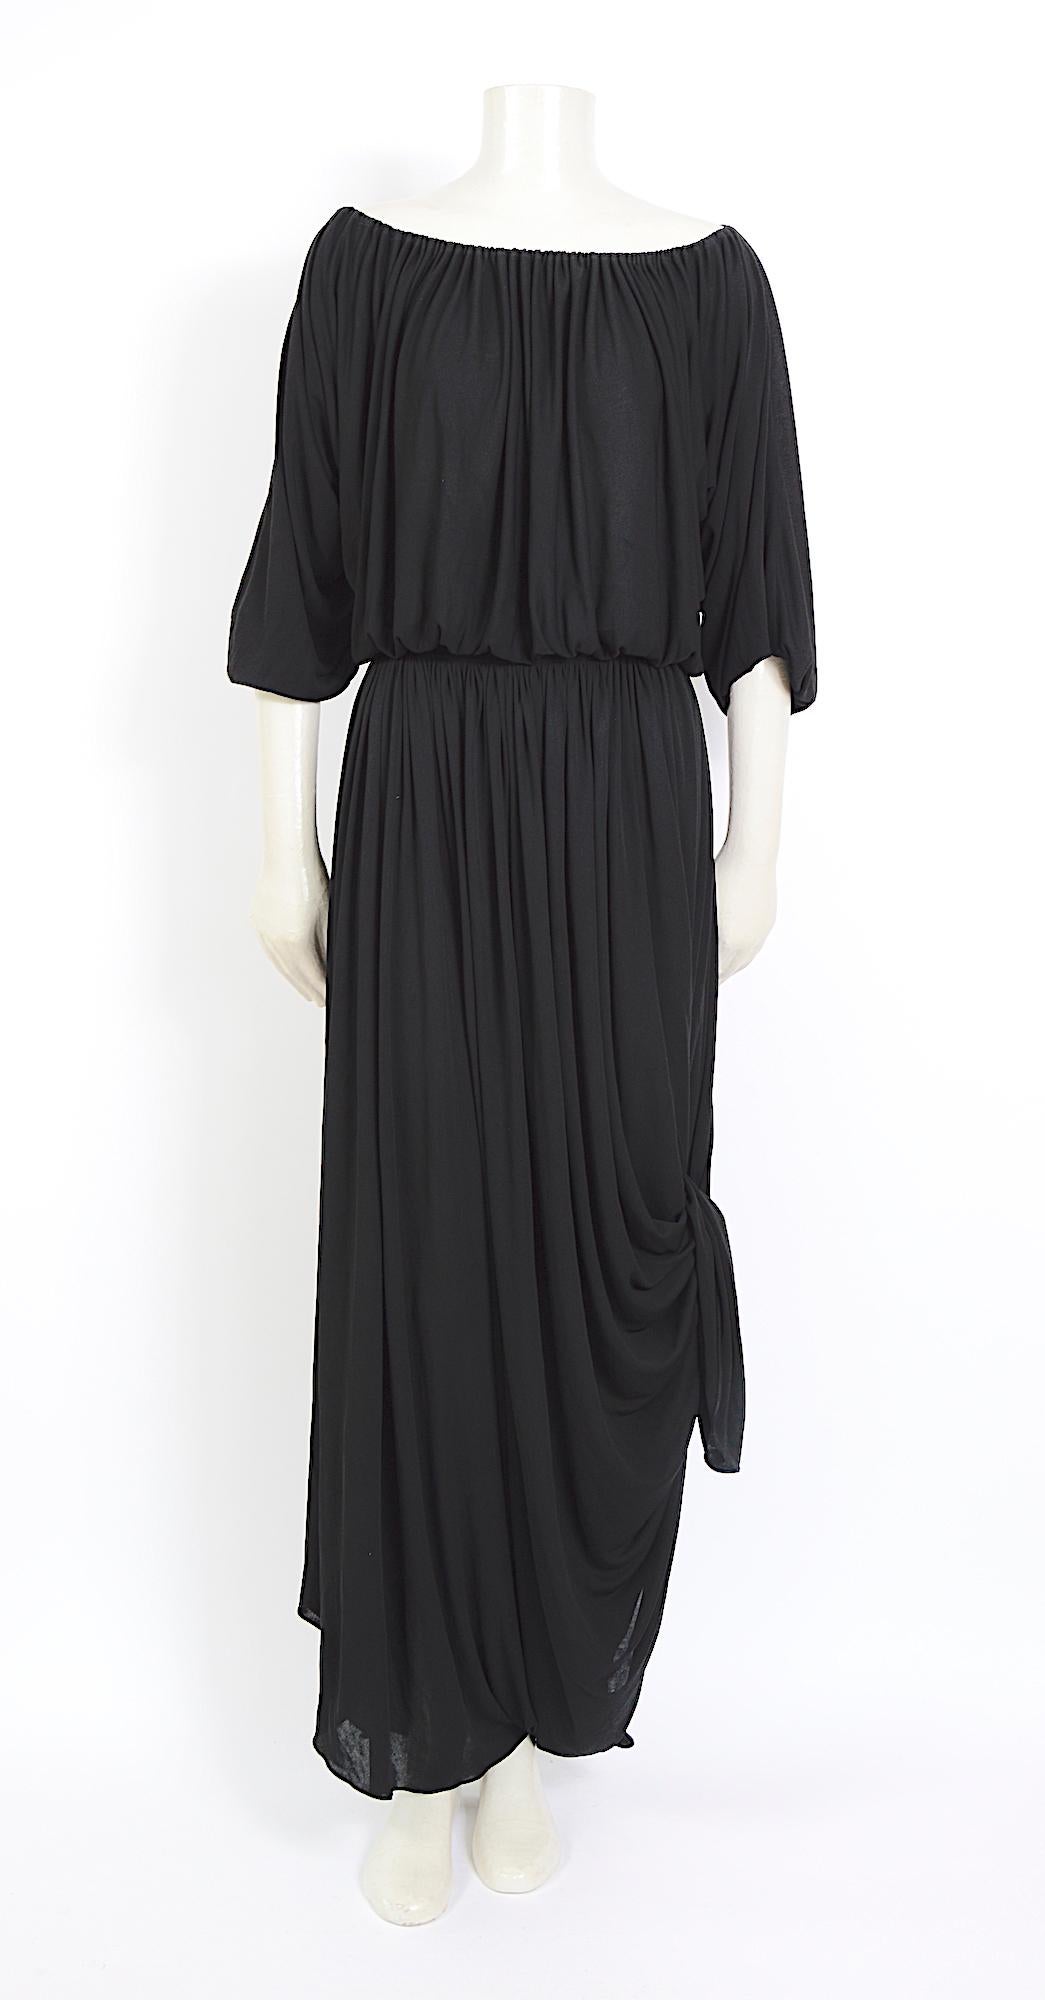 Collectional Vintage Nina Ricci Kleid aus den 1970er Jahren.
Ich liebe die Drapierungsmöglichkeiten an diesem Nina Ricci Kleid aus den 1970er Jahren. Hergestellt aus einem schönen schwarzen Viskose-Jersey-Kleid. Ein paar winzige, stecknadelkopfgroße